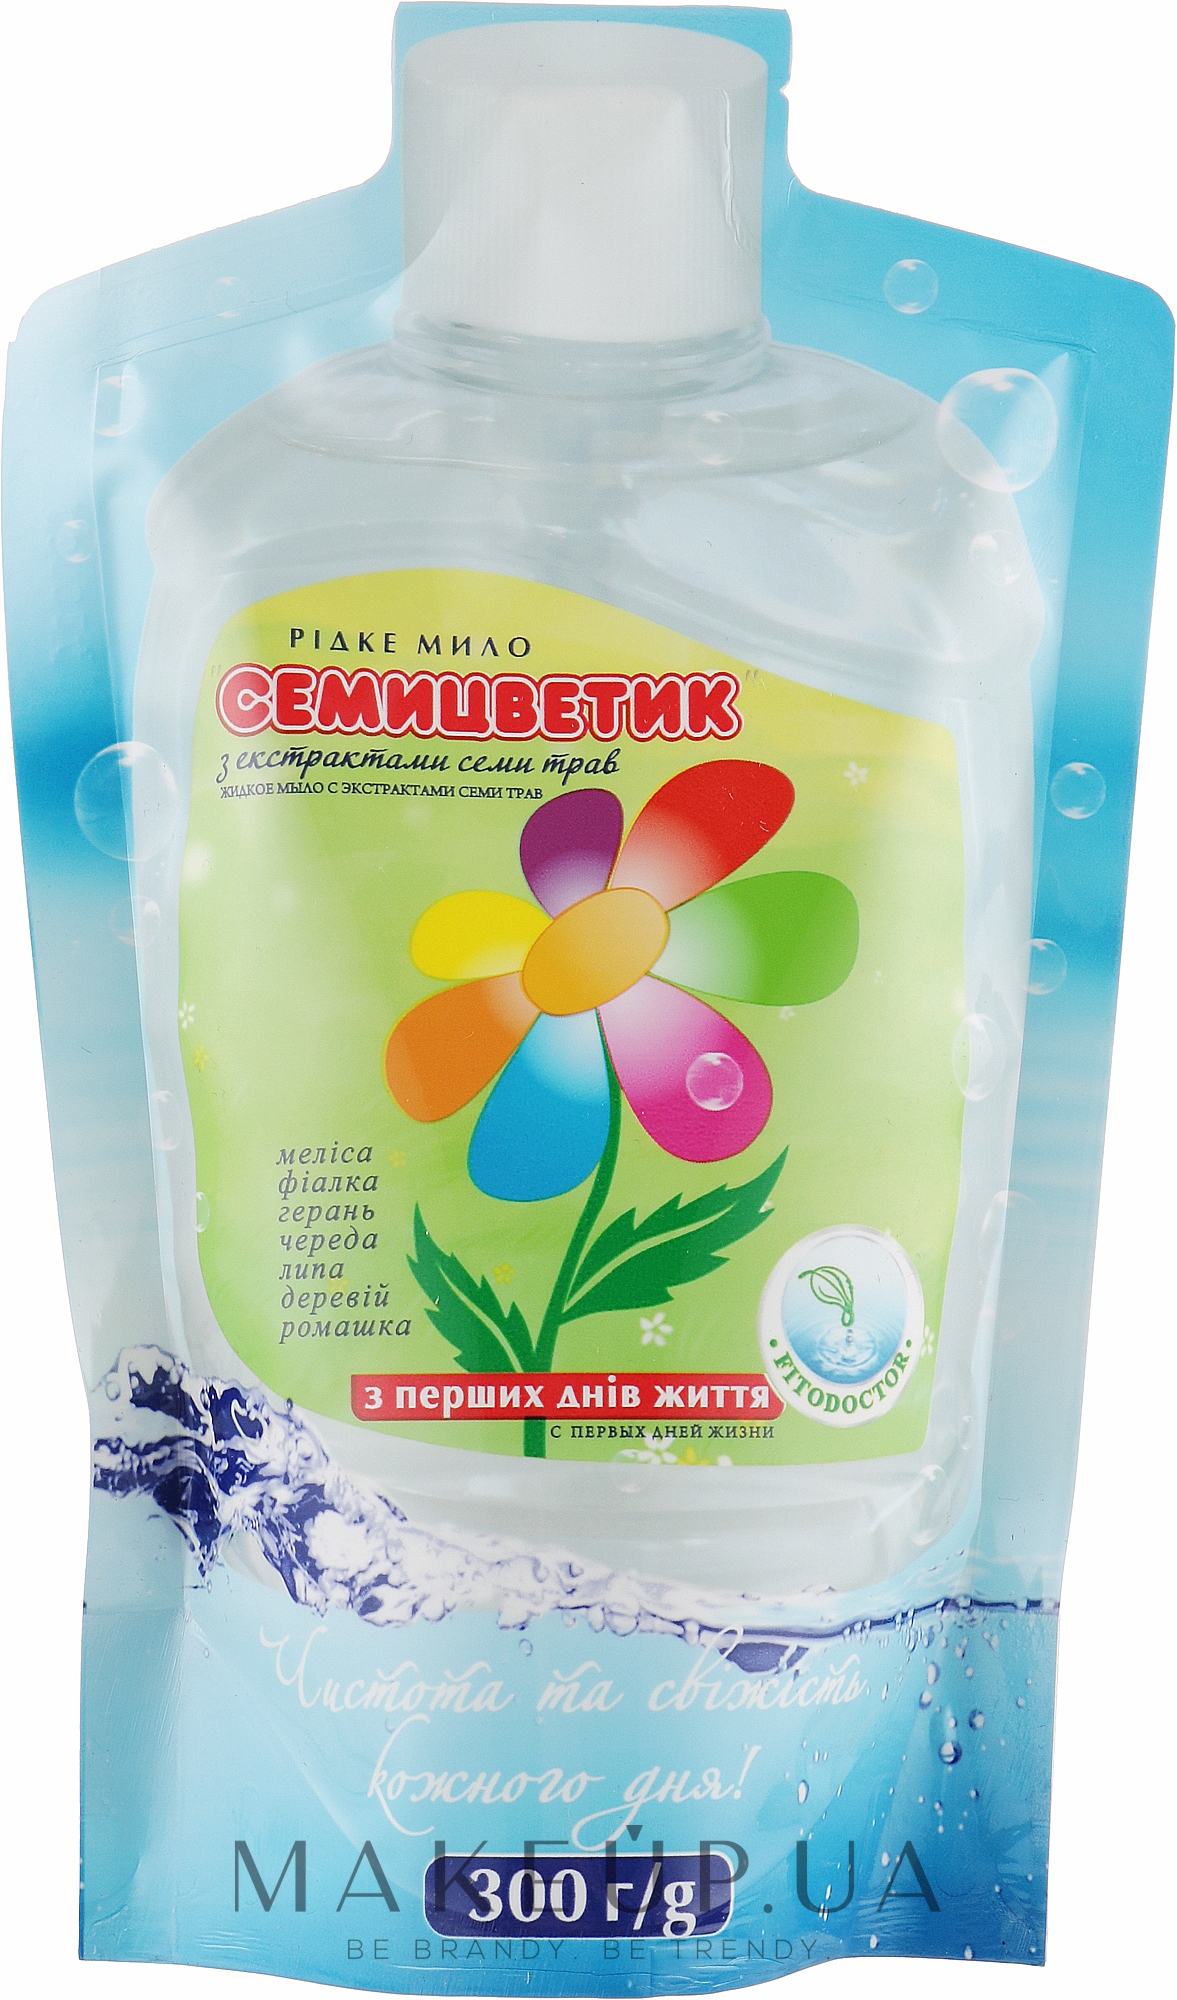 Жидкое мыло "Семицветик" с экстрактами семи трав - Фитодоктор (сменный блок) — фото 300g